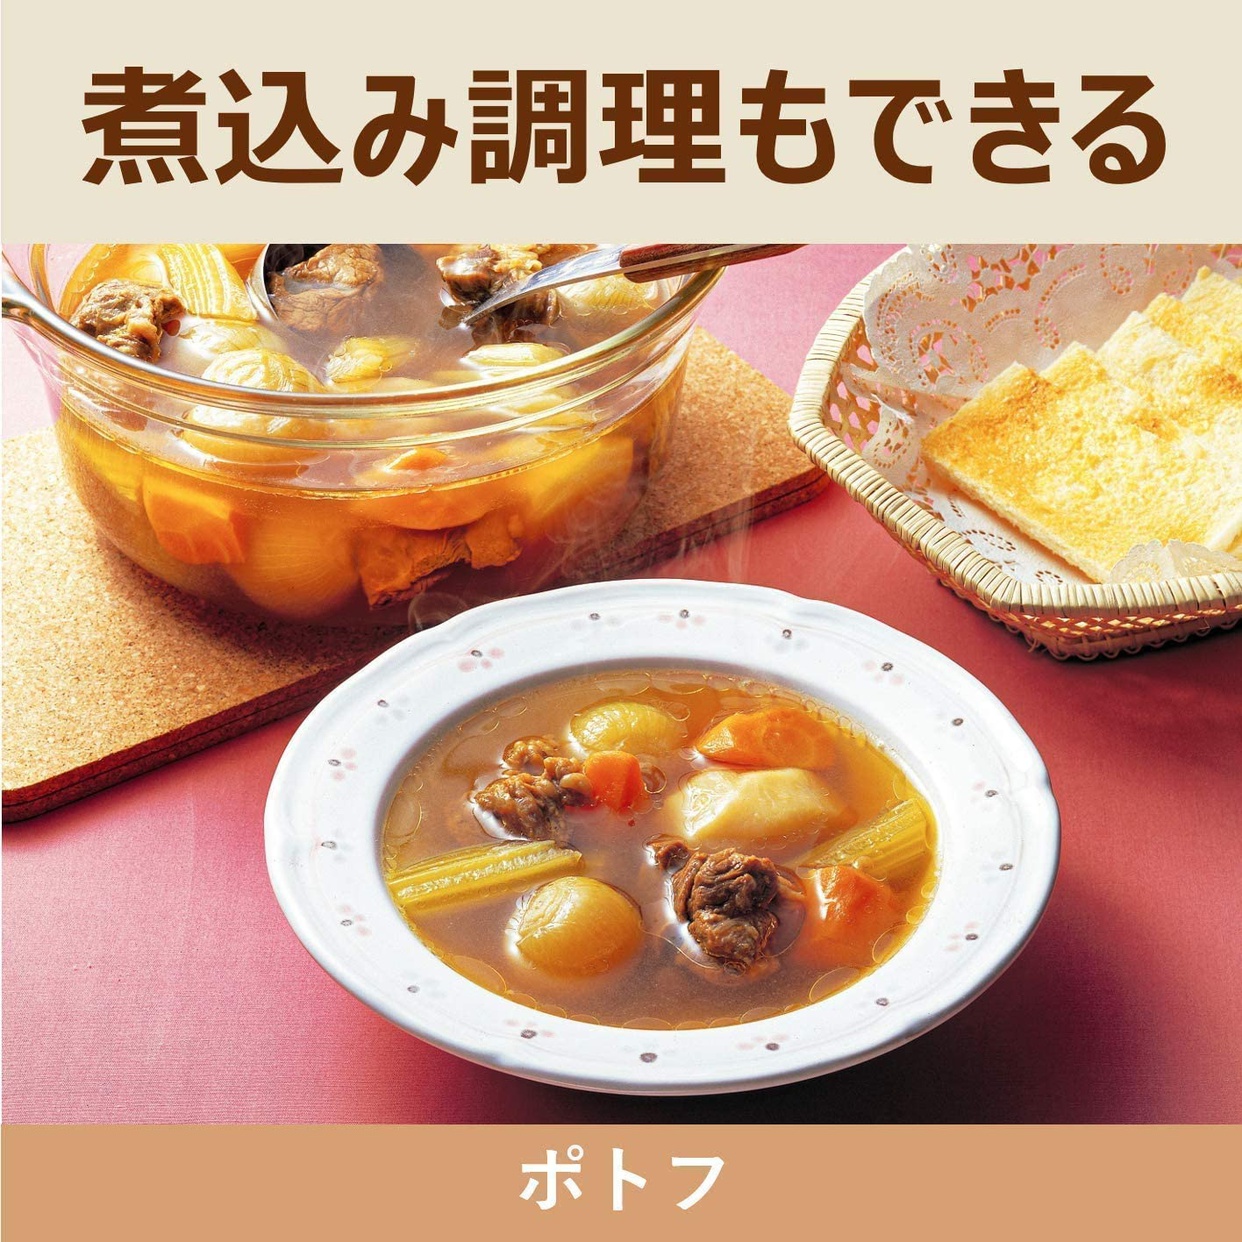 日立(HITACHI) IH炊飯ジャー RZ-BC10Mの商品画像6 